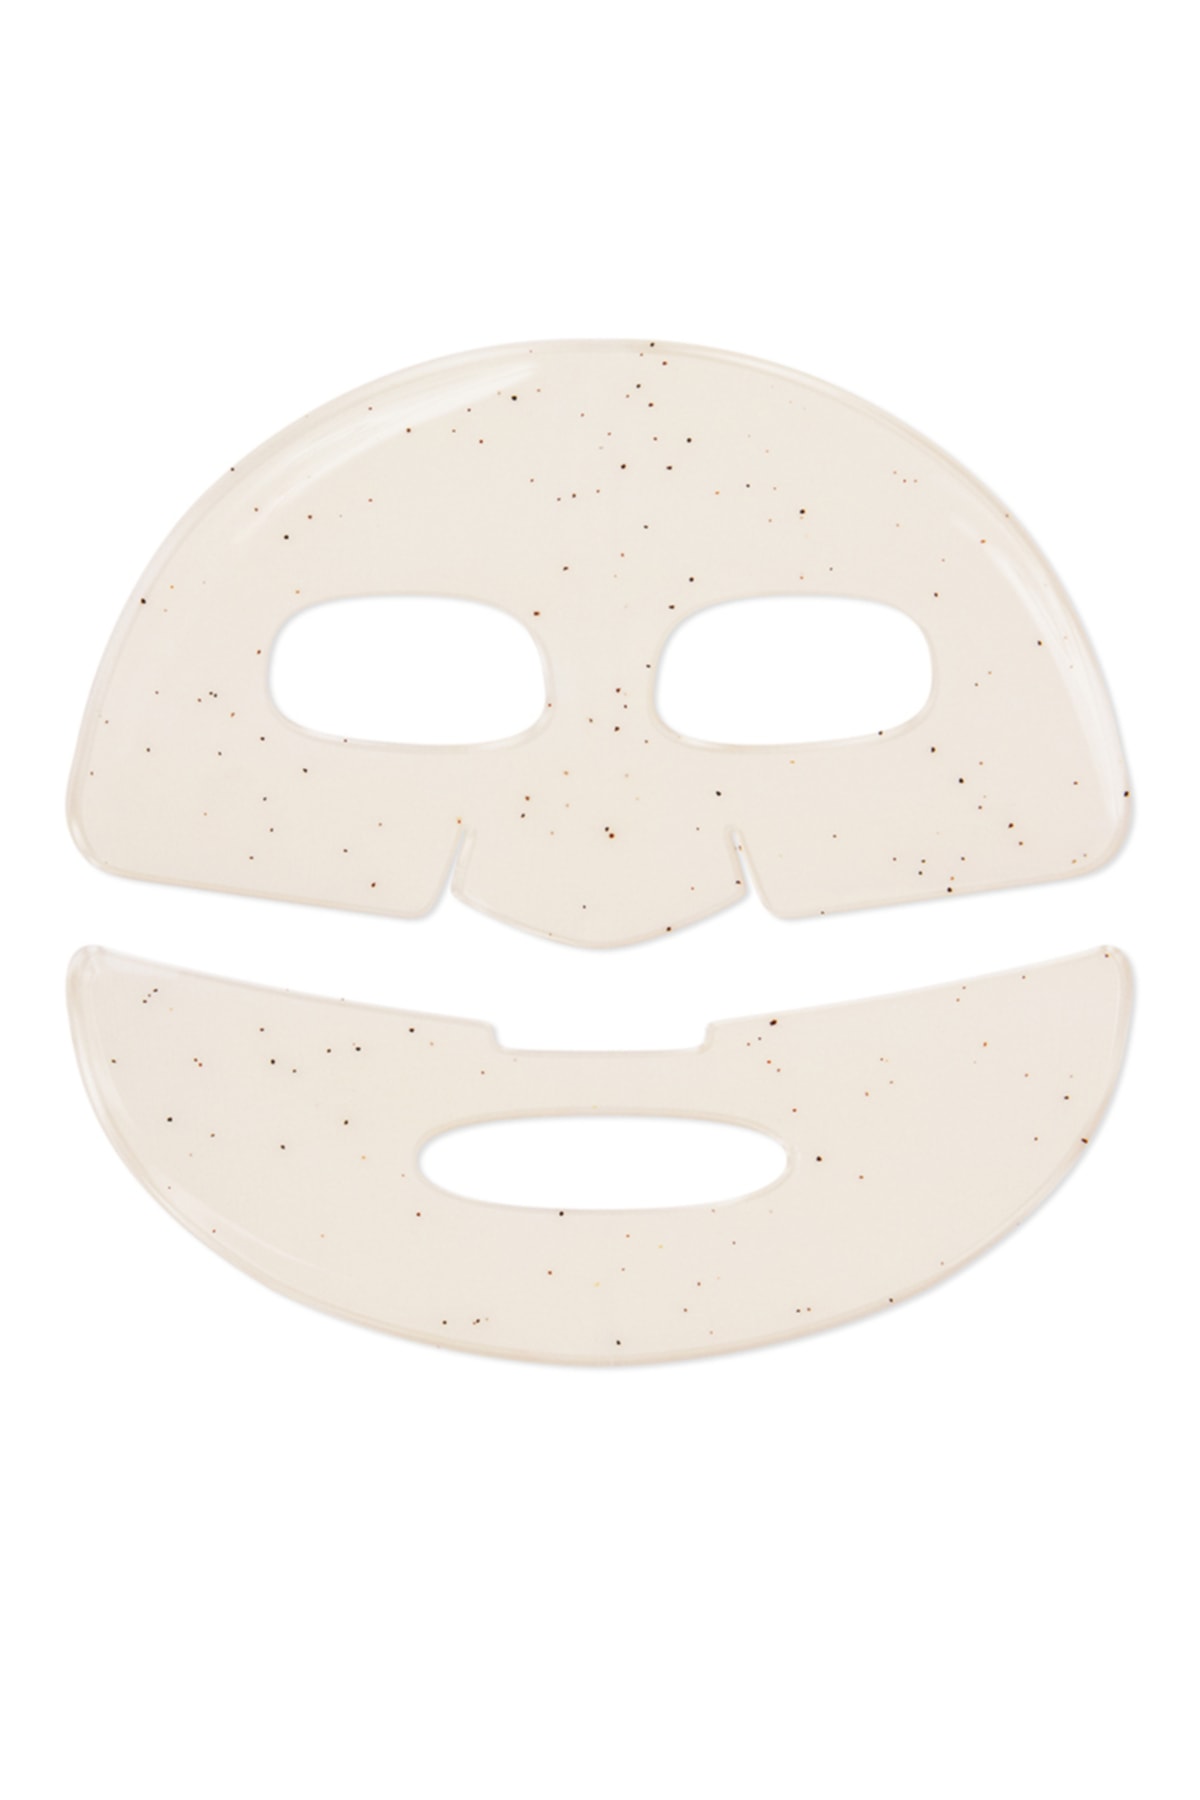 KIKO Maske - Energızıng Face Mask.1 01 ZO6135